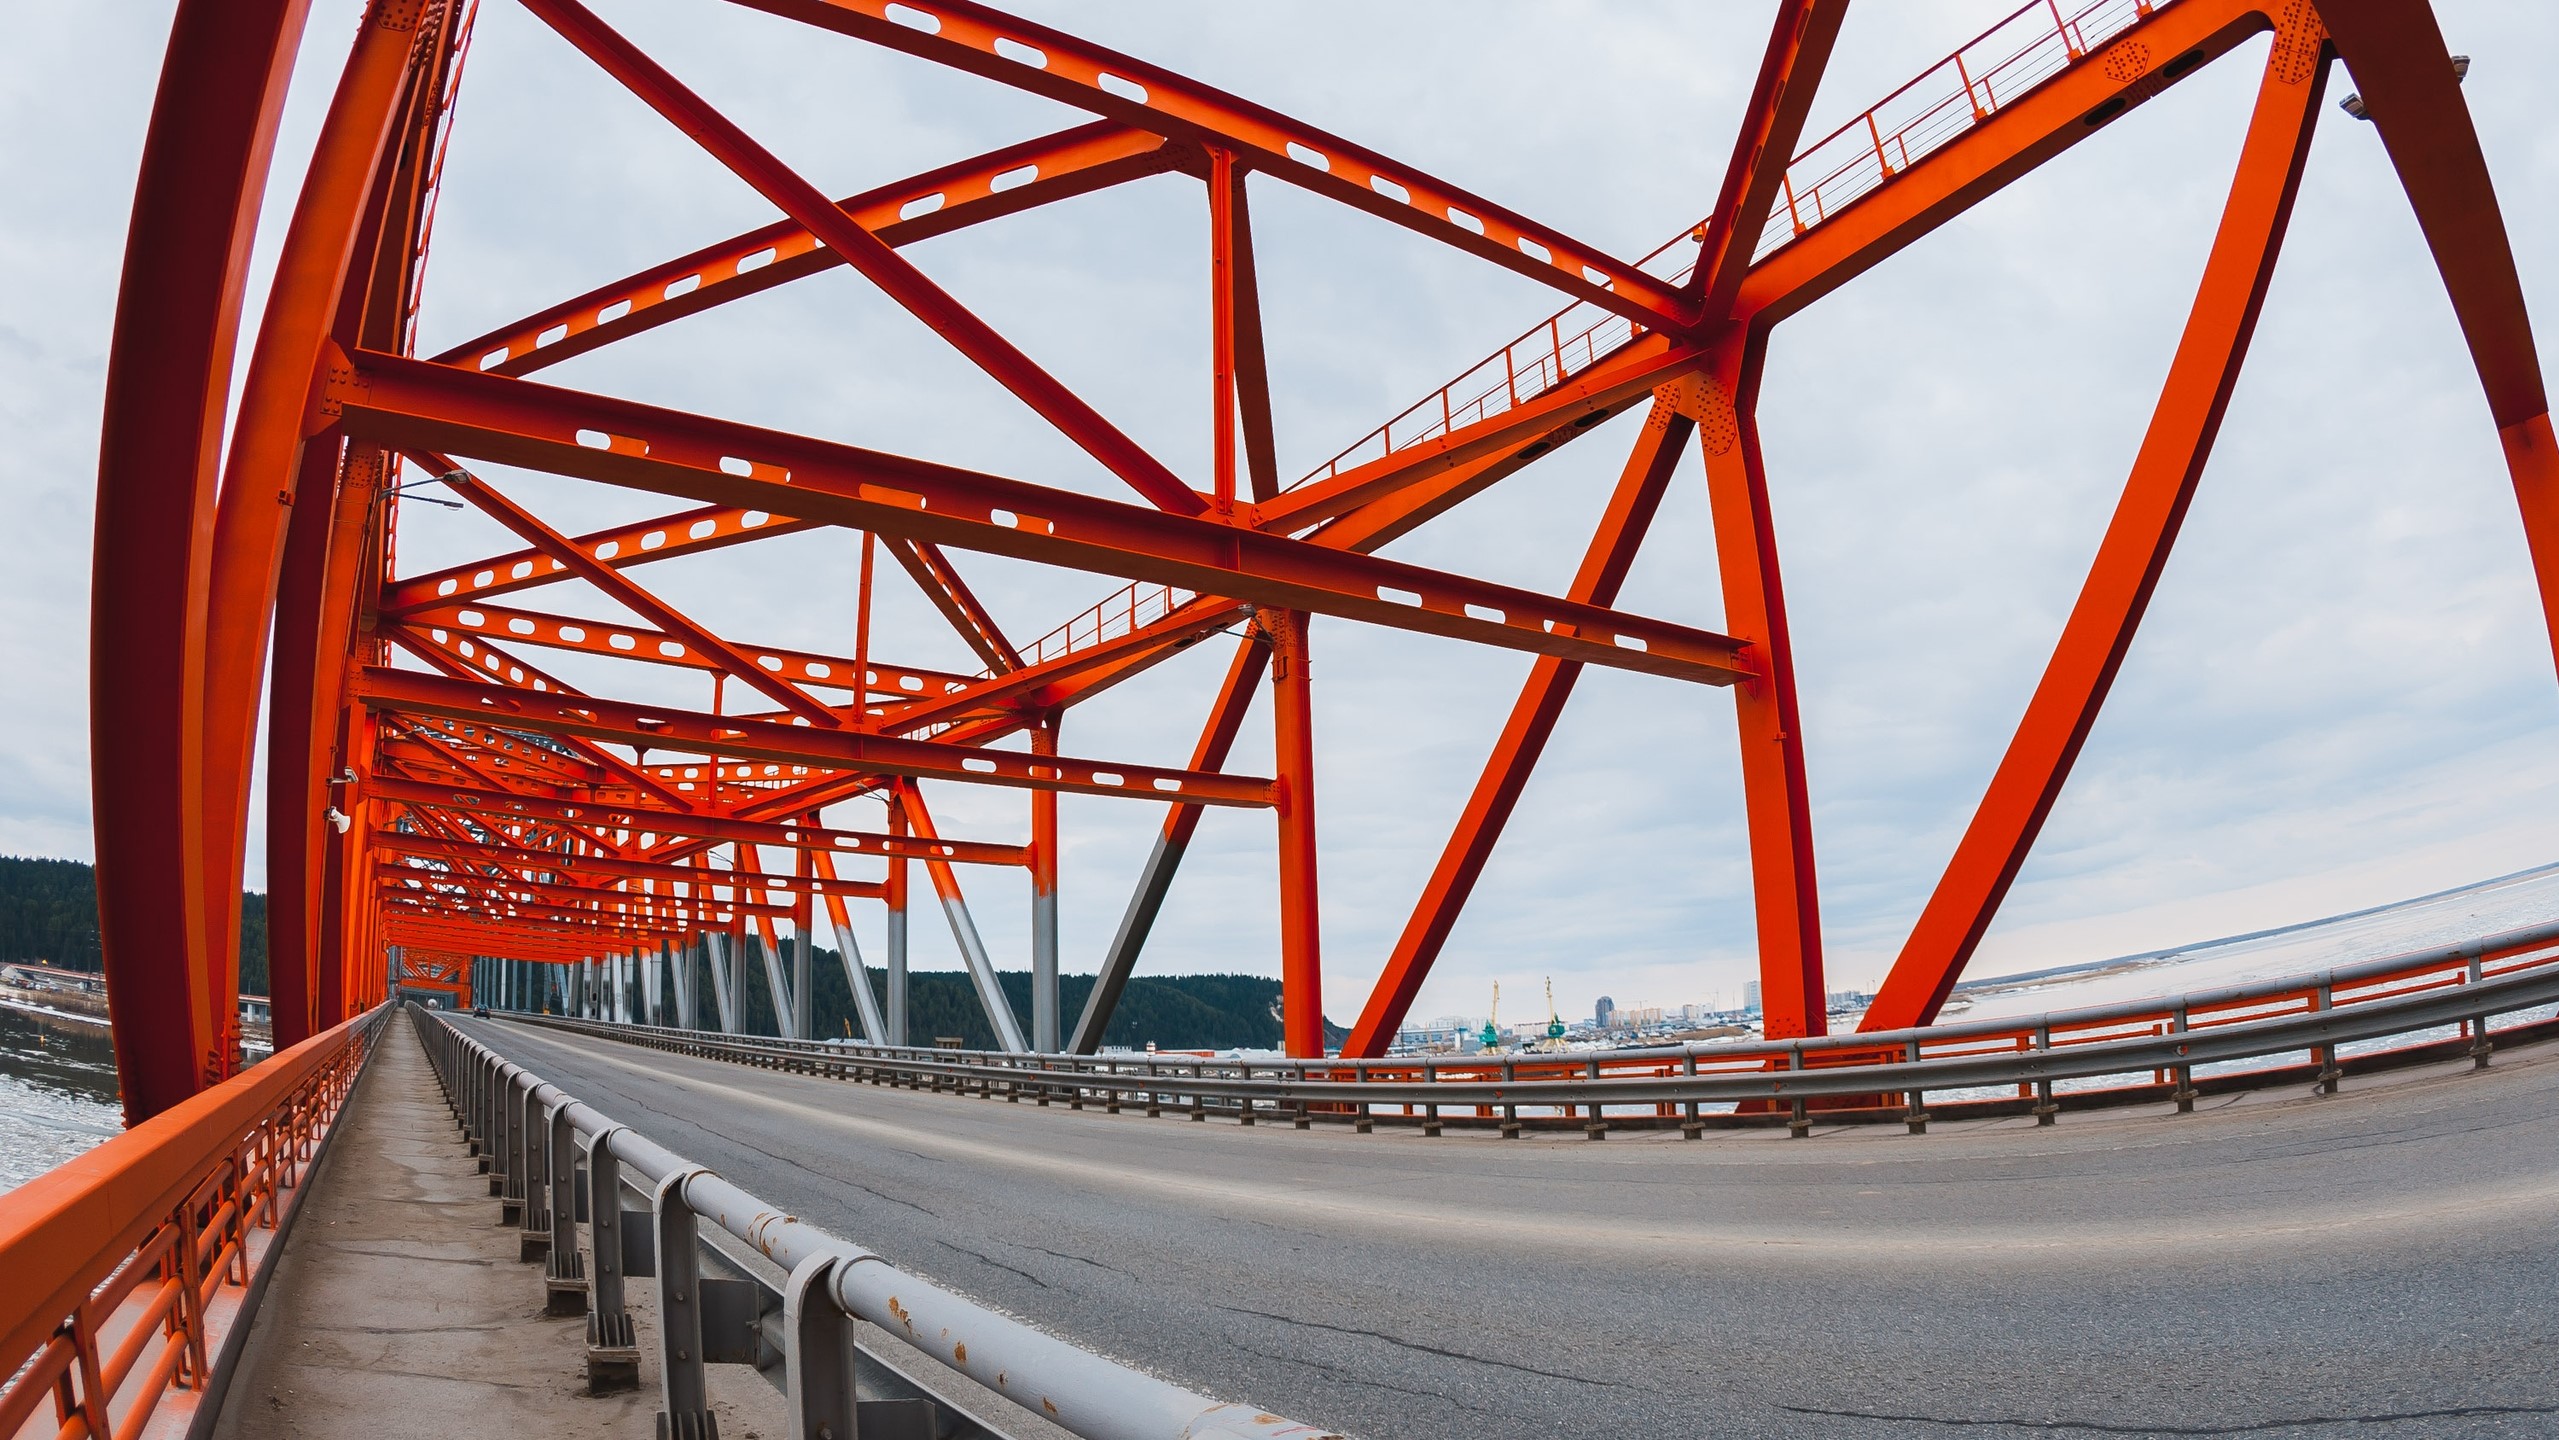 Мост красный дракон в Ханты-Мансийске. Мост красный дракон в Ханты-Мансийске фото. Горка закрытая красная. Место где стоит мост красный дракон без моста Ханты Мансийск.